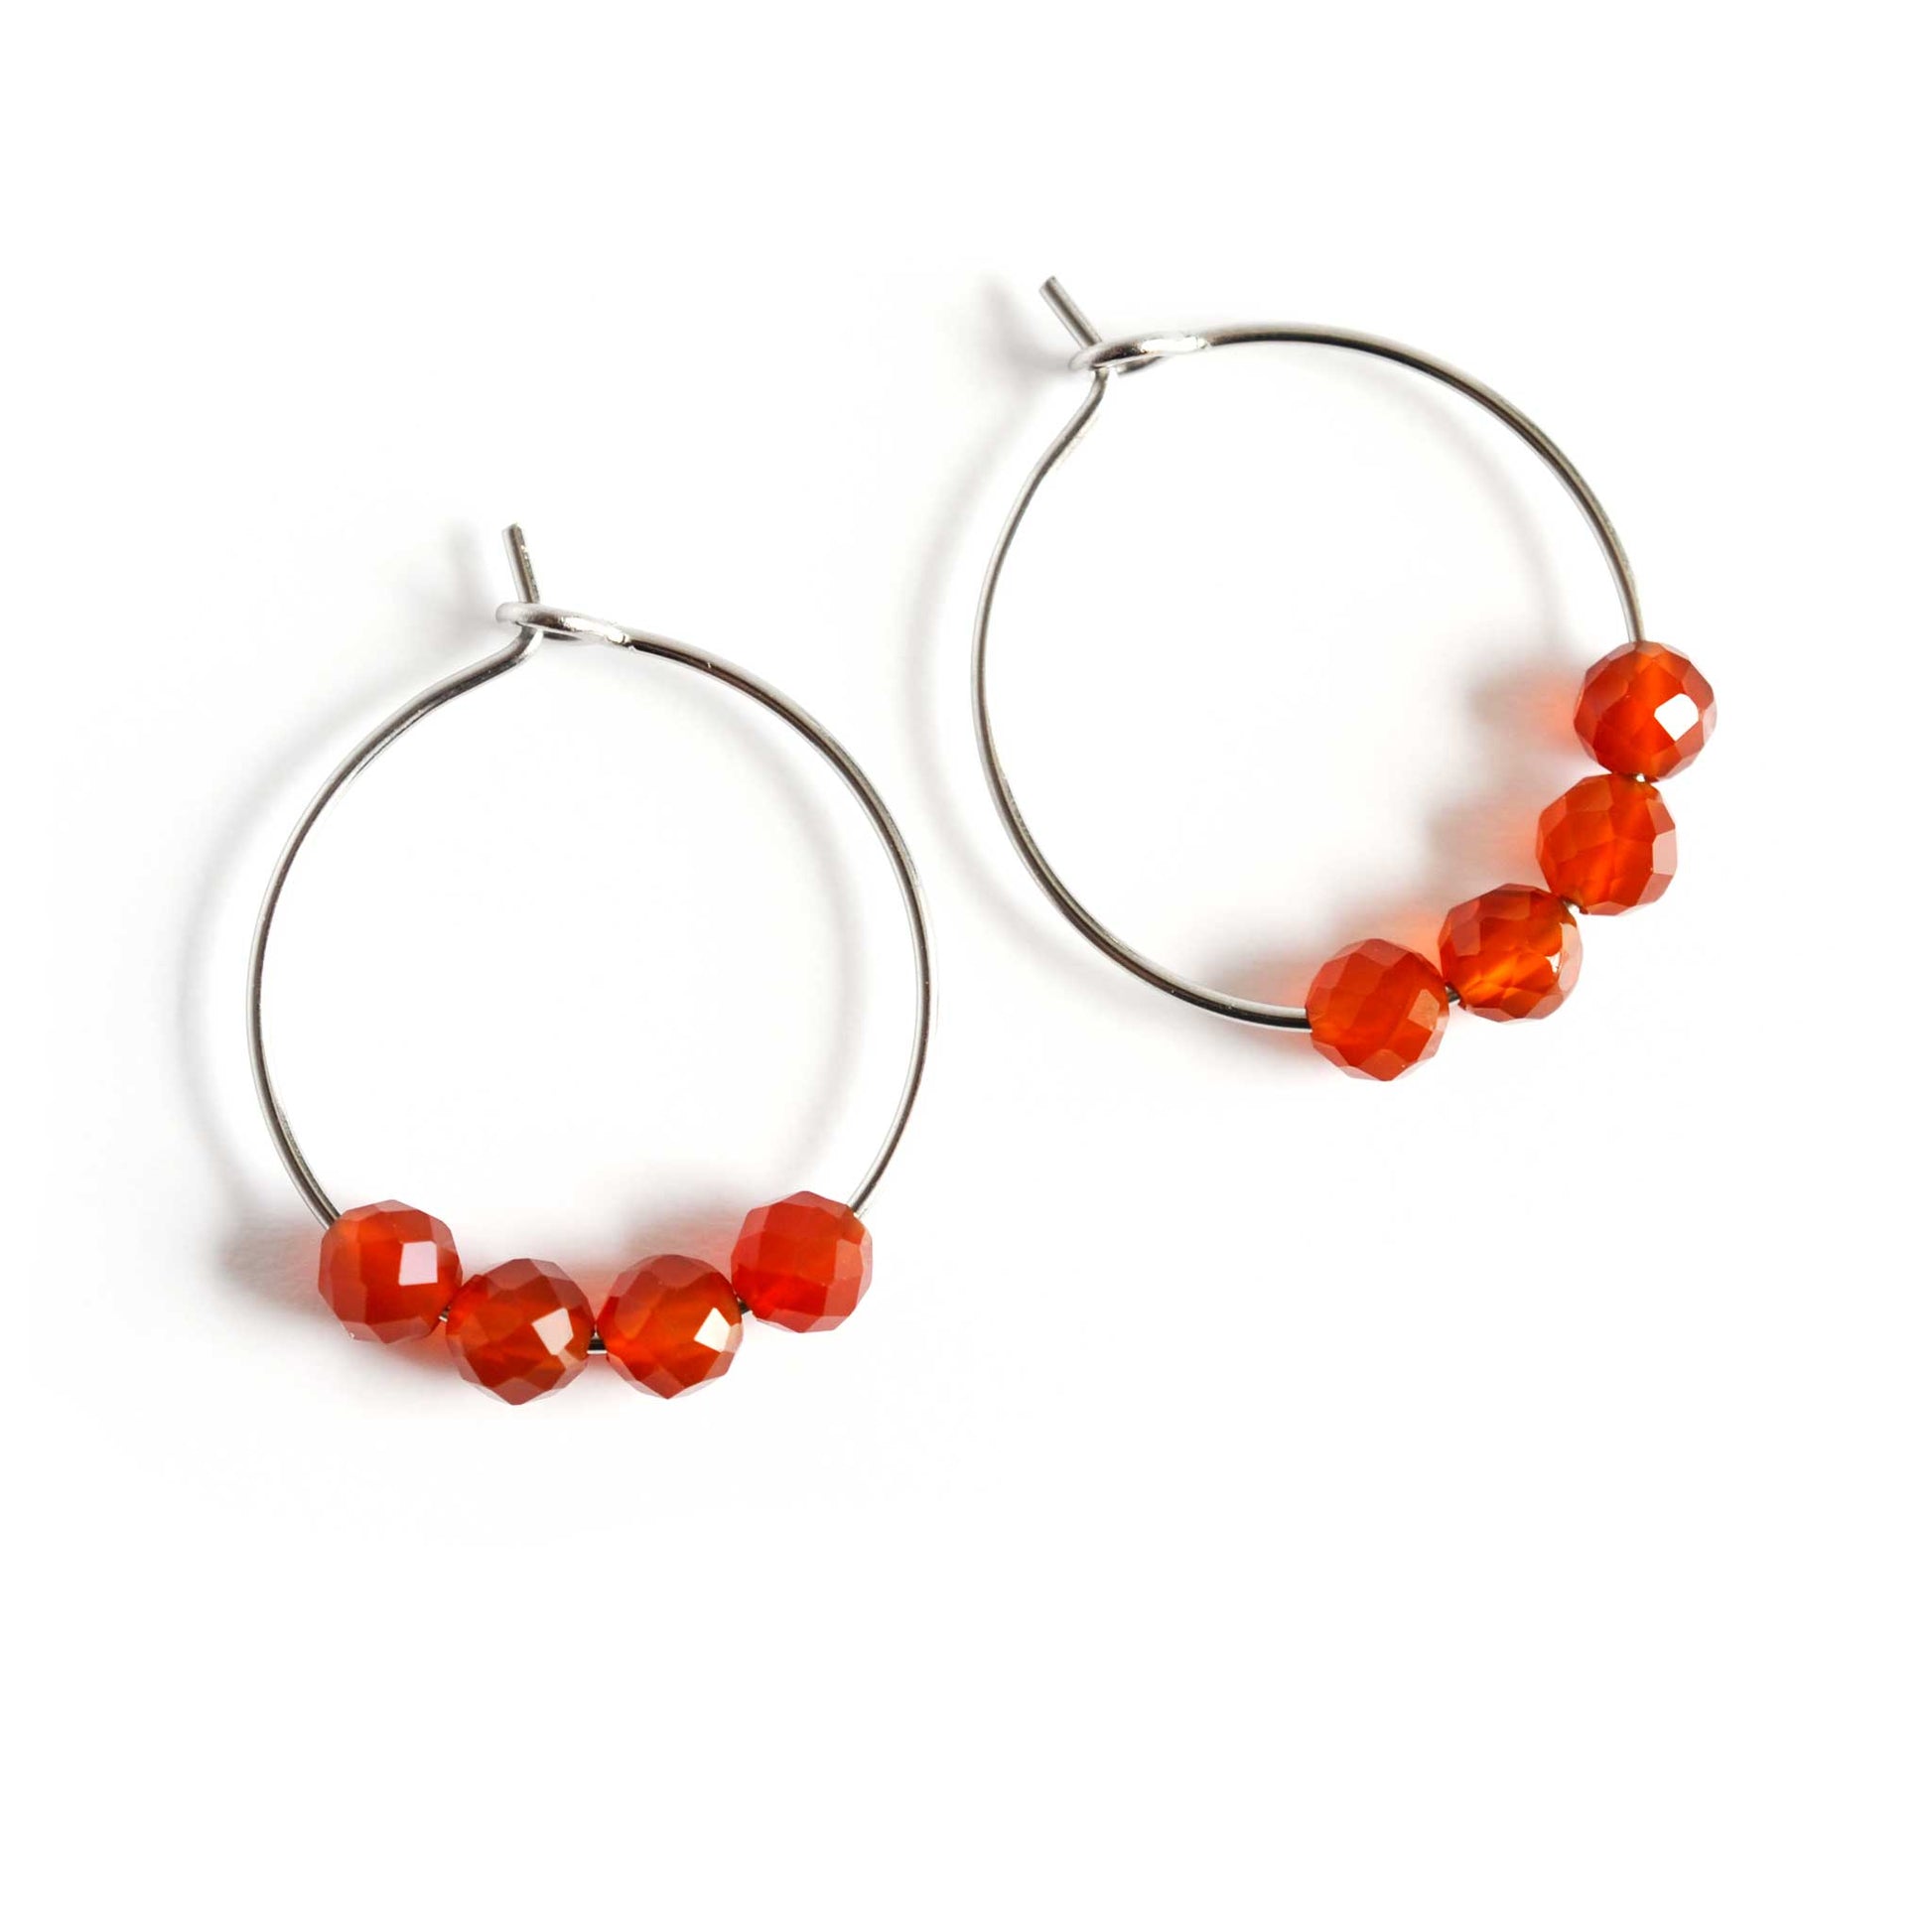 Pair of orange Carnelian gemstone hoop earrings on white background